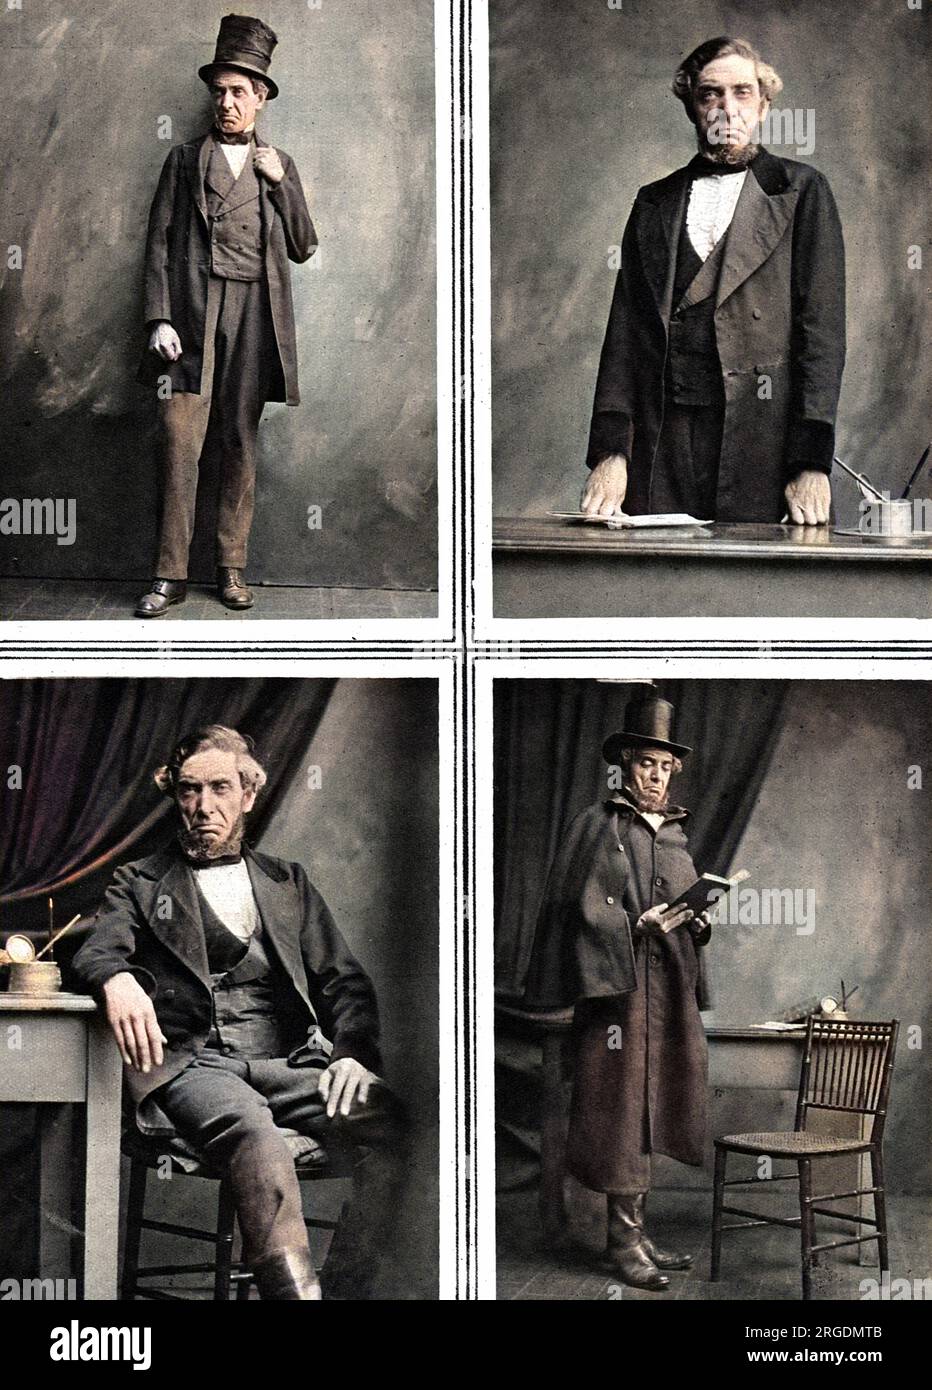 L'acteur, M. William J. Rea dans le rôle d'Abraham Lincoln au Lyric Opera House, Hammersmith en 1919, jouant le rôle principal dans la pièce de John Drinkwater. Les photographies montrent Rea jouant Lincoln à différentes étapes de sa carrière, de l'offre de présidence en 1860 à sa mort en 1865. Banque D'Images